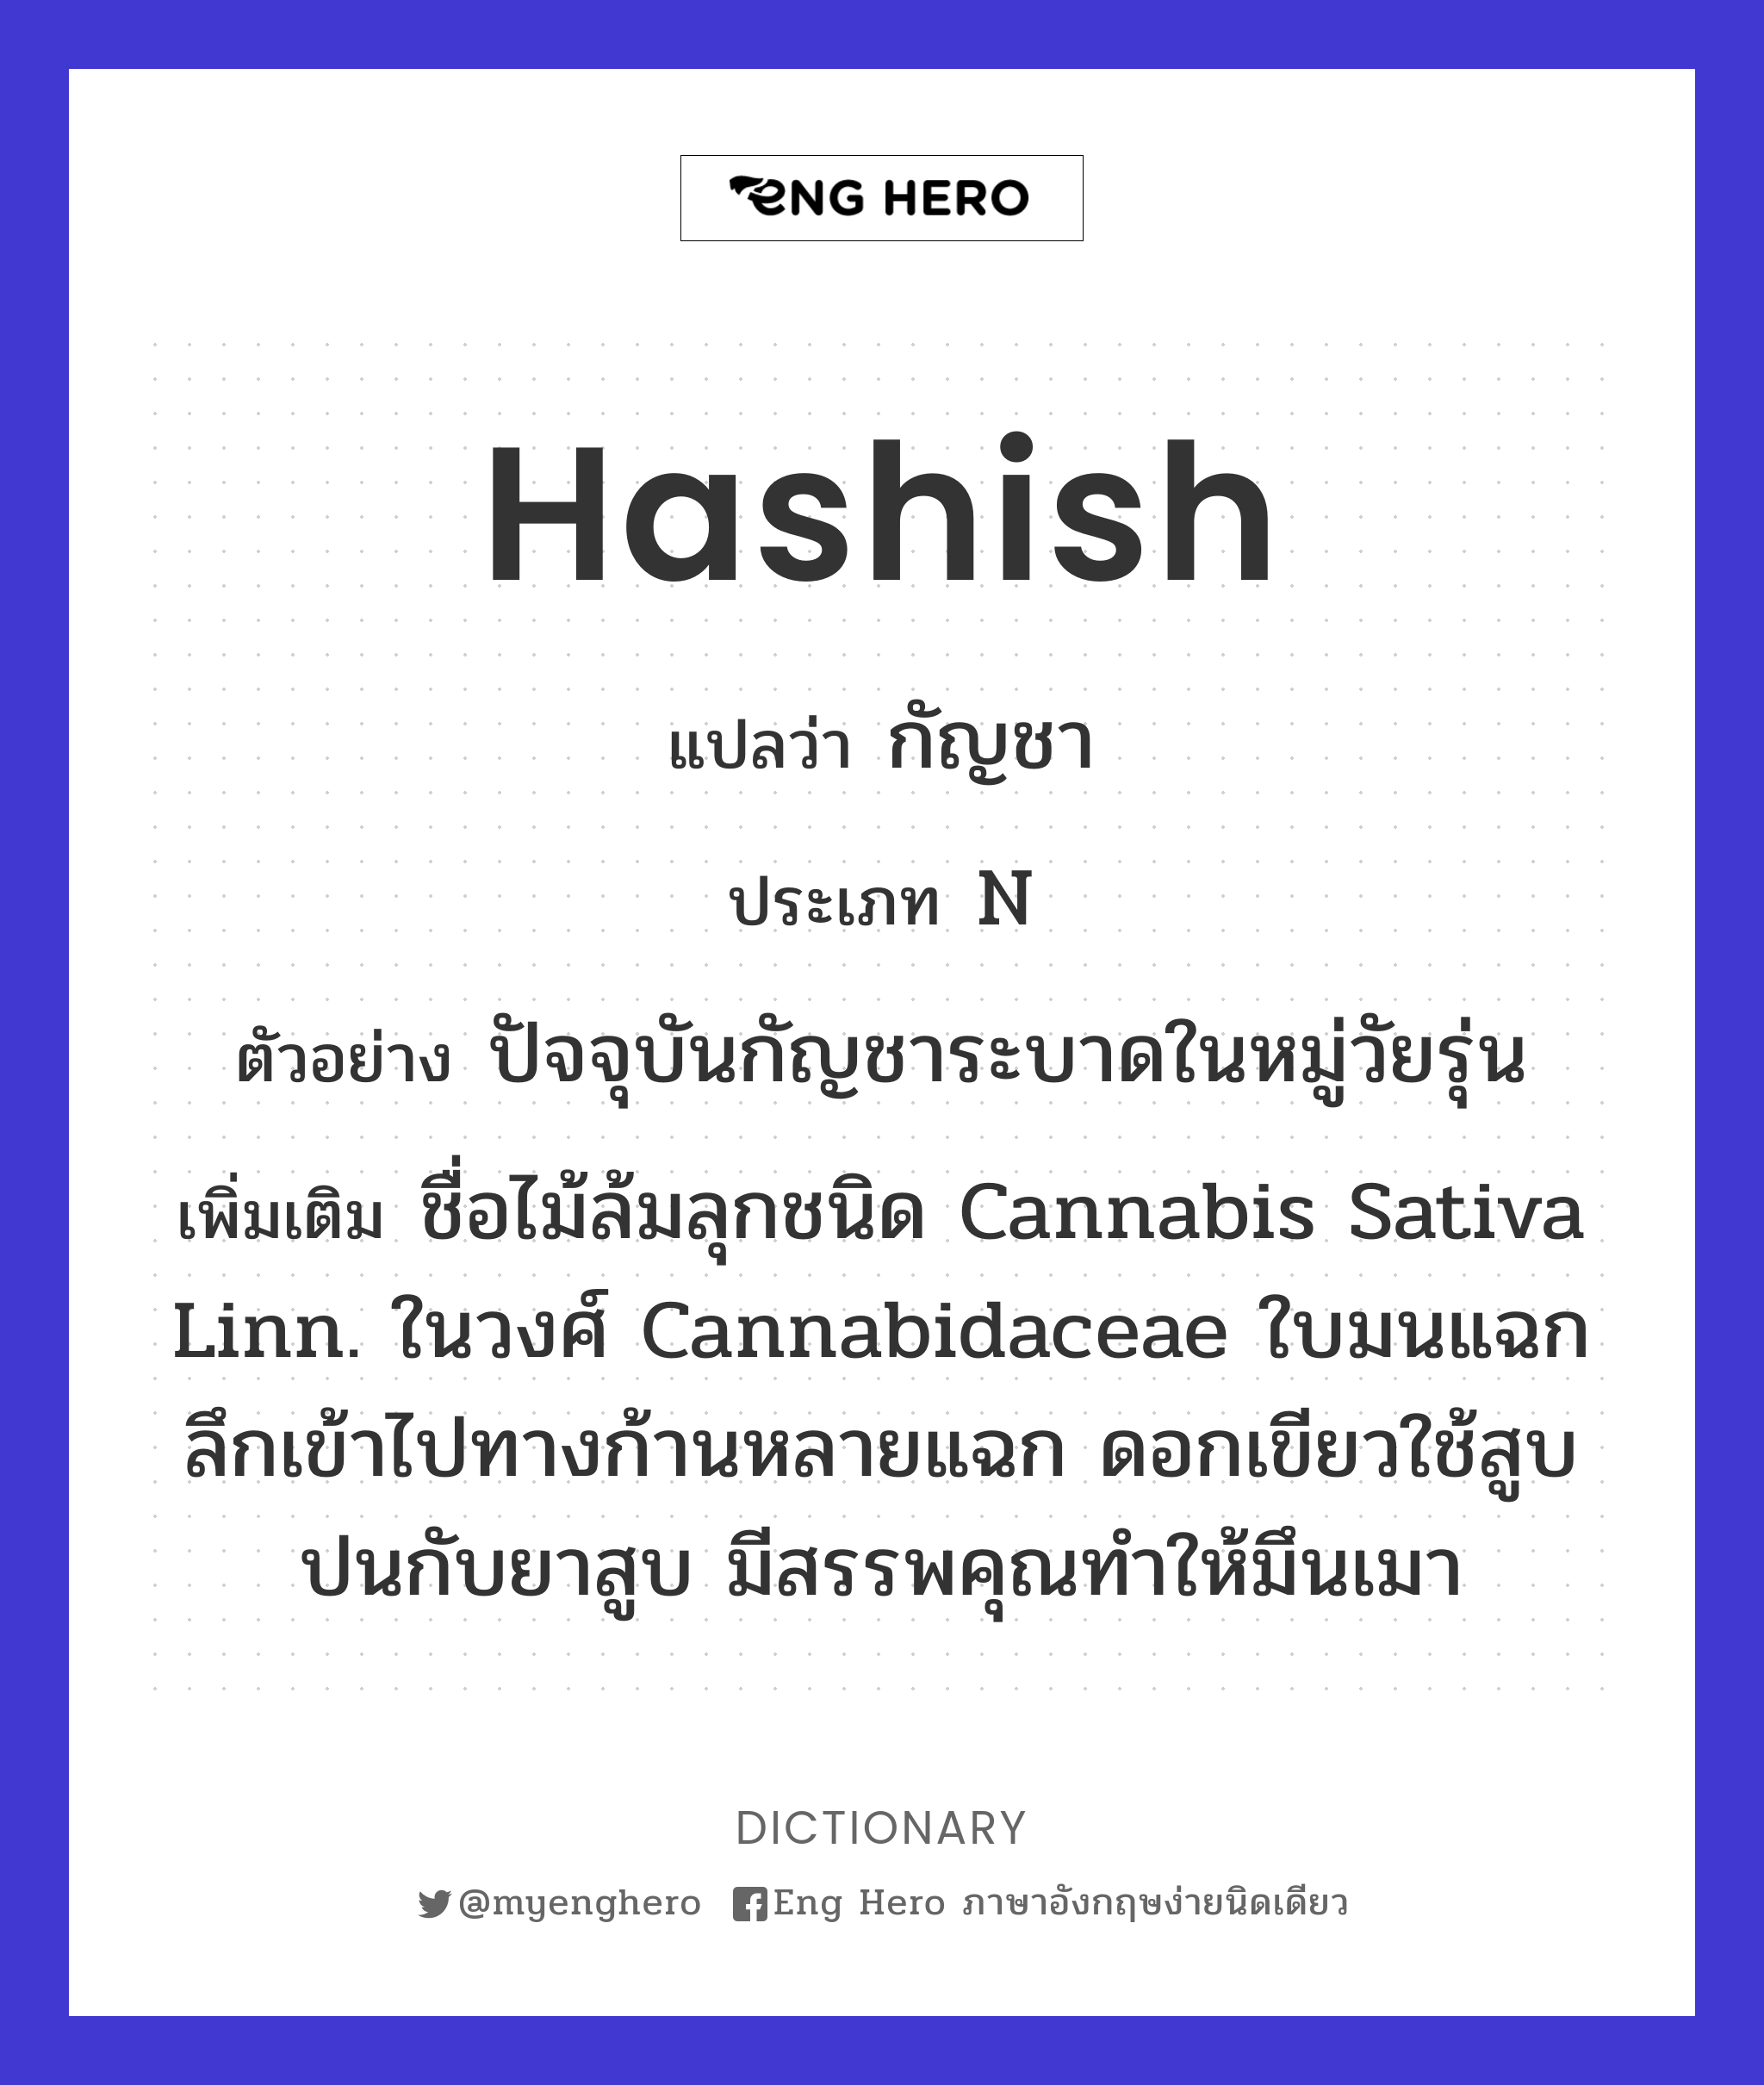 hashish